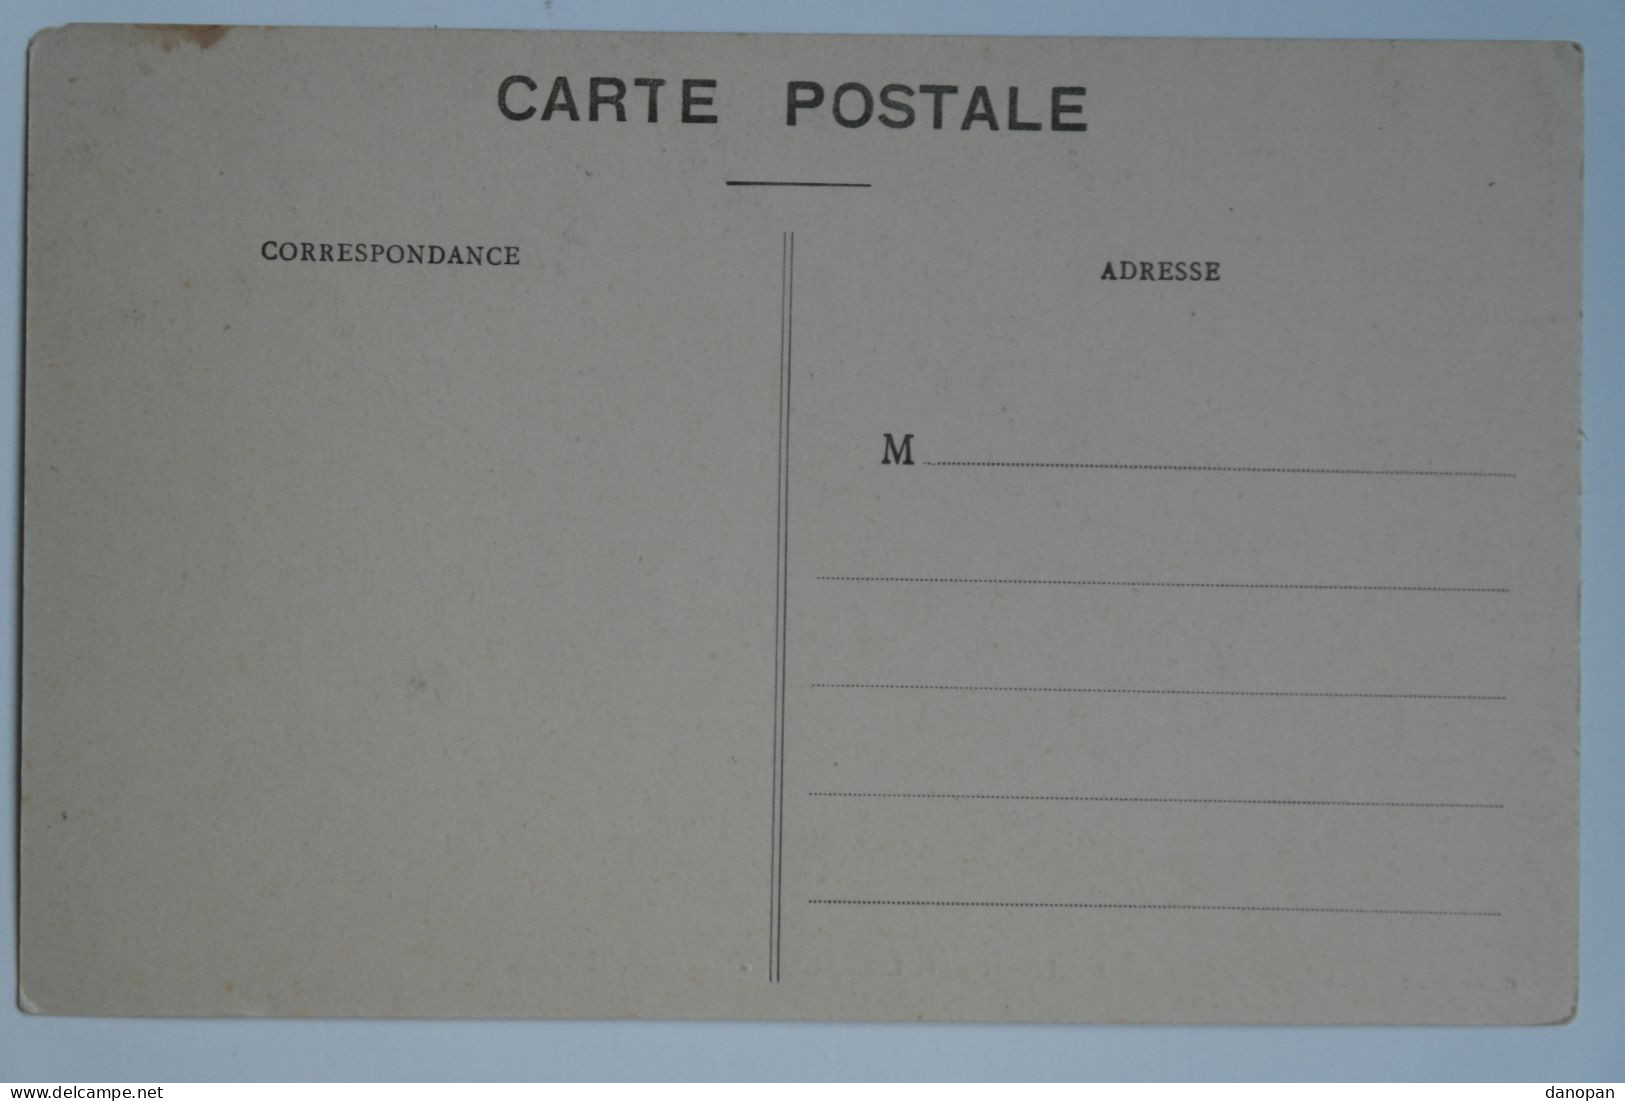 Lot 20 cpa 100% France - Animées, cartes rares. Belles cartes, toutes en photo, pas de mauvaises surprises - BL43